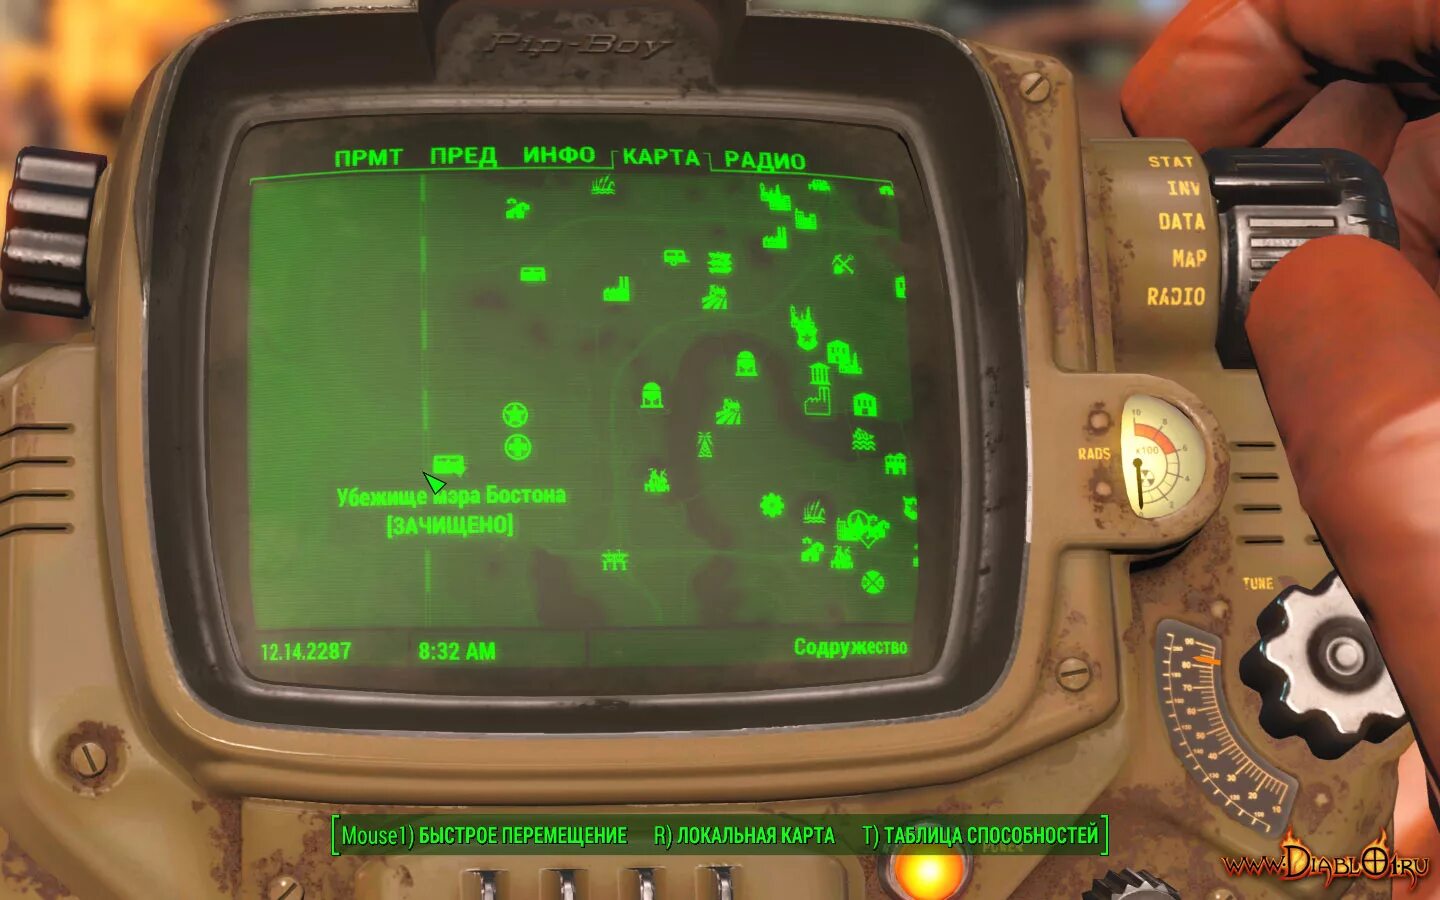 Fallout 4 ускорена. Fallout 4 убежище мэра Бостона на карте. Фоллаут 4 убежище 88 на карте. Убежище 108 Fallout 4. Фоллаут 4 убежище 75.